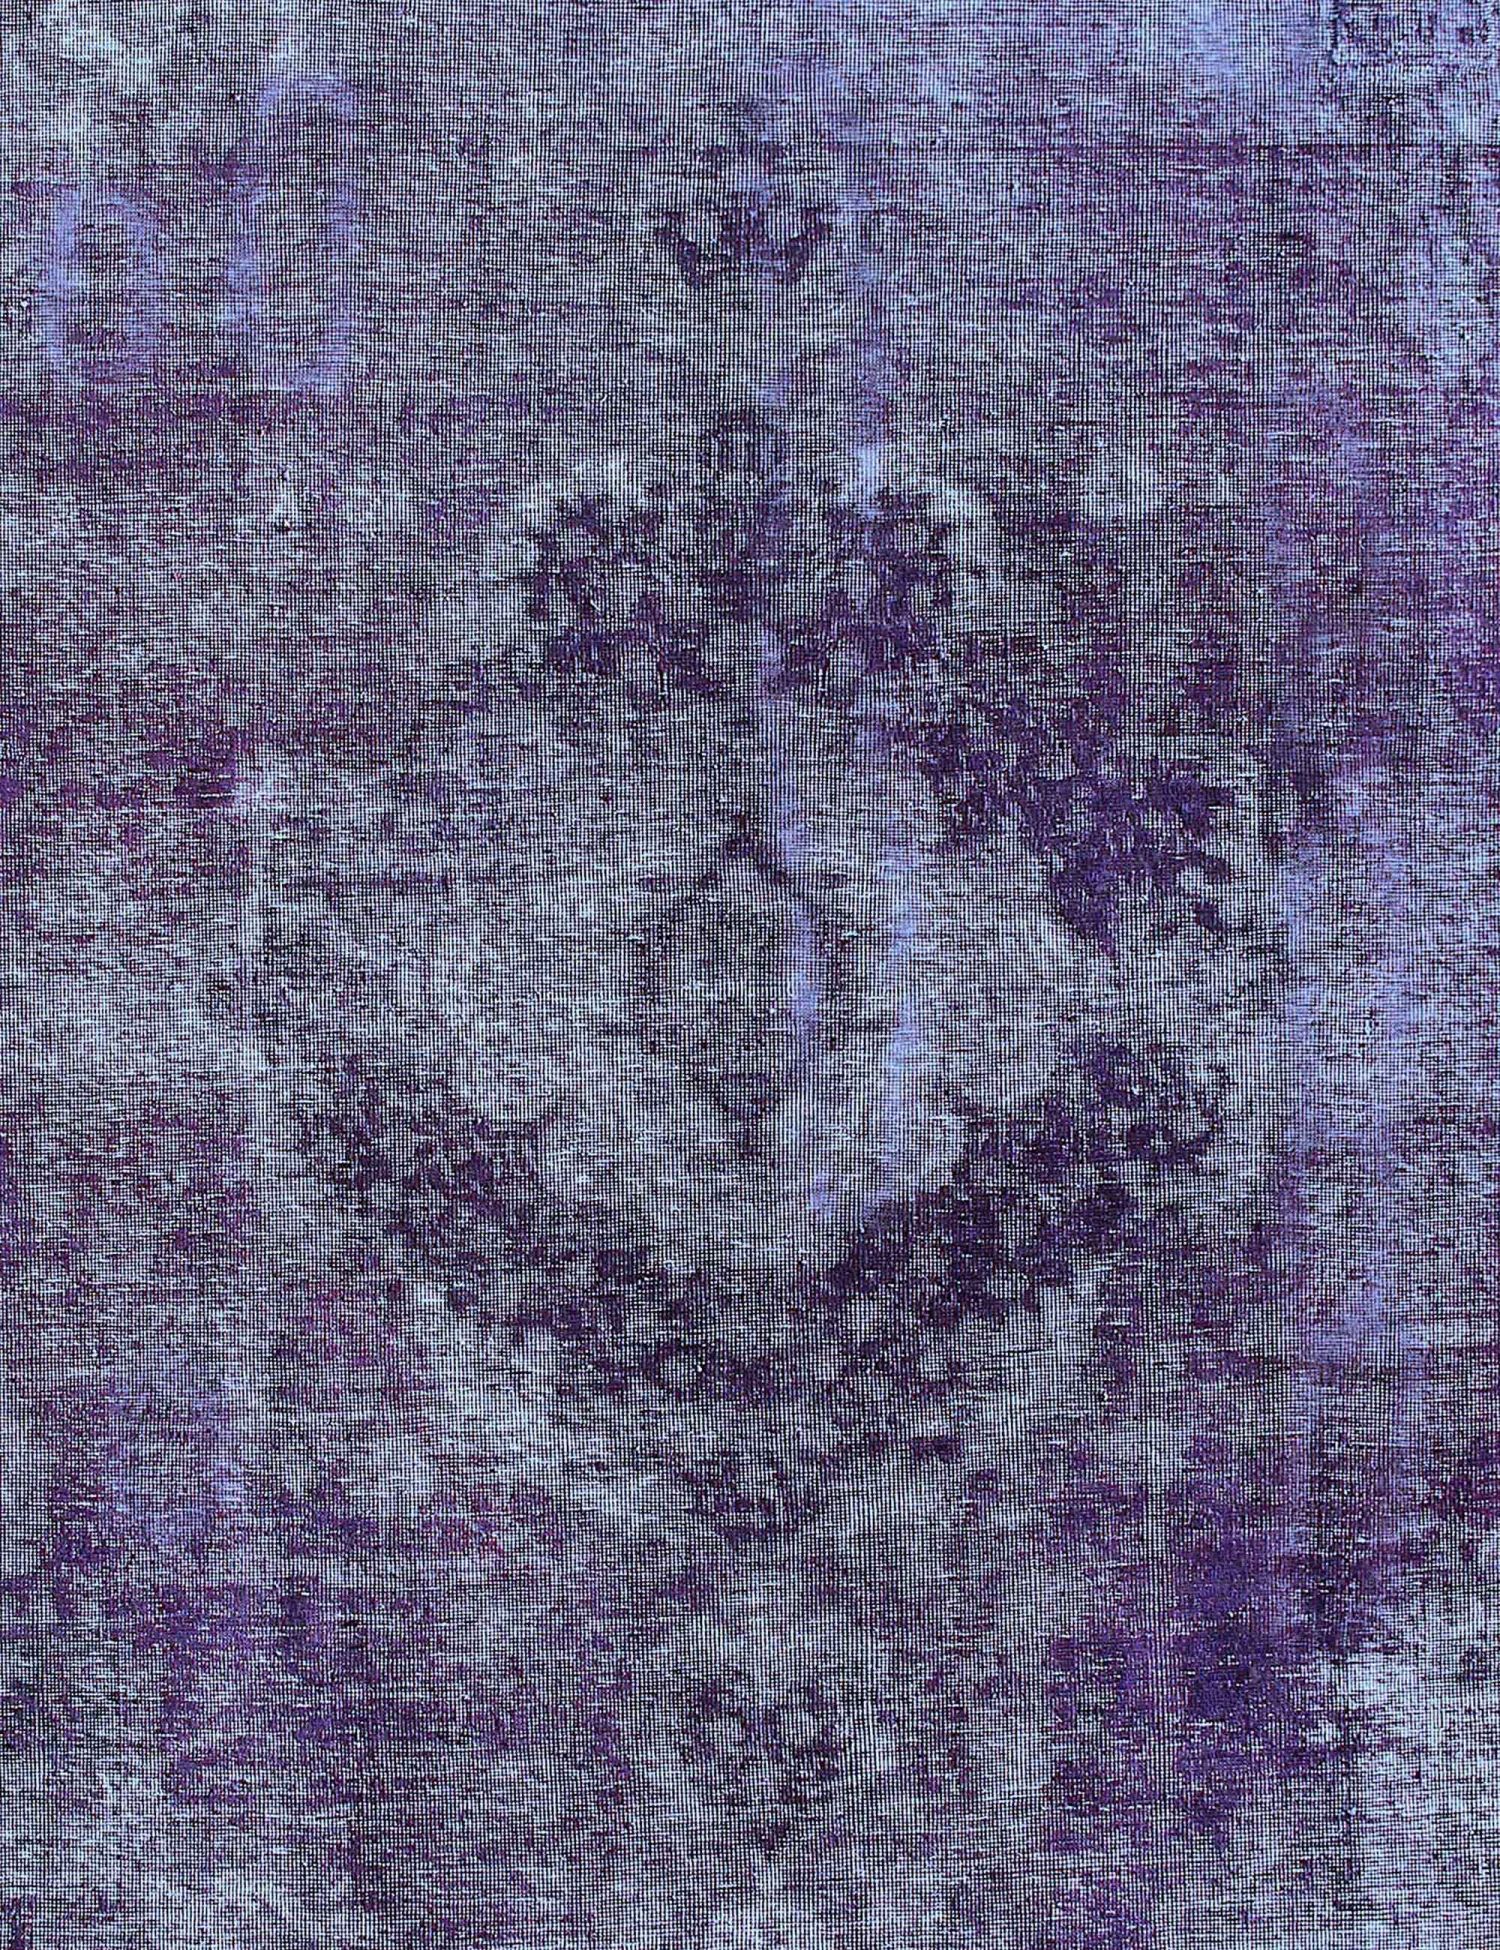 Persischer Vintage Teppich  lila <br/>274 x 205 cm